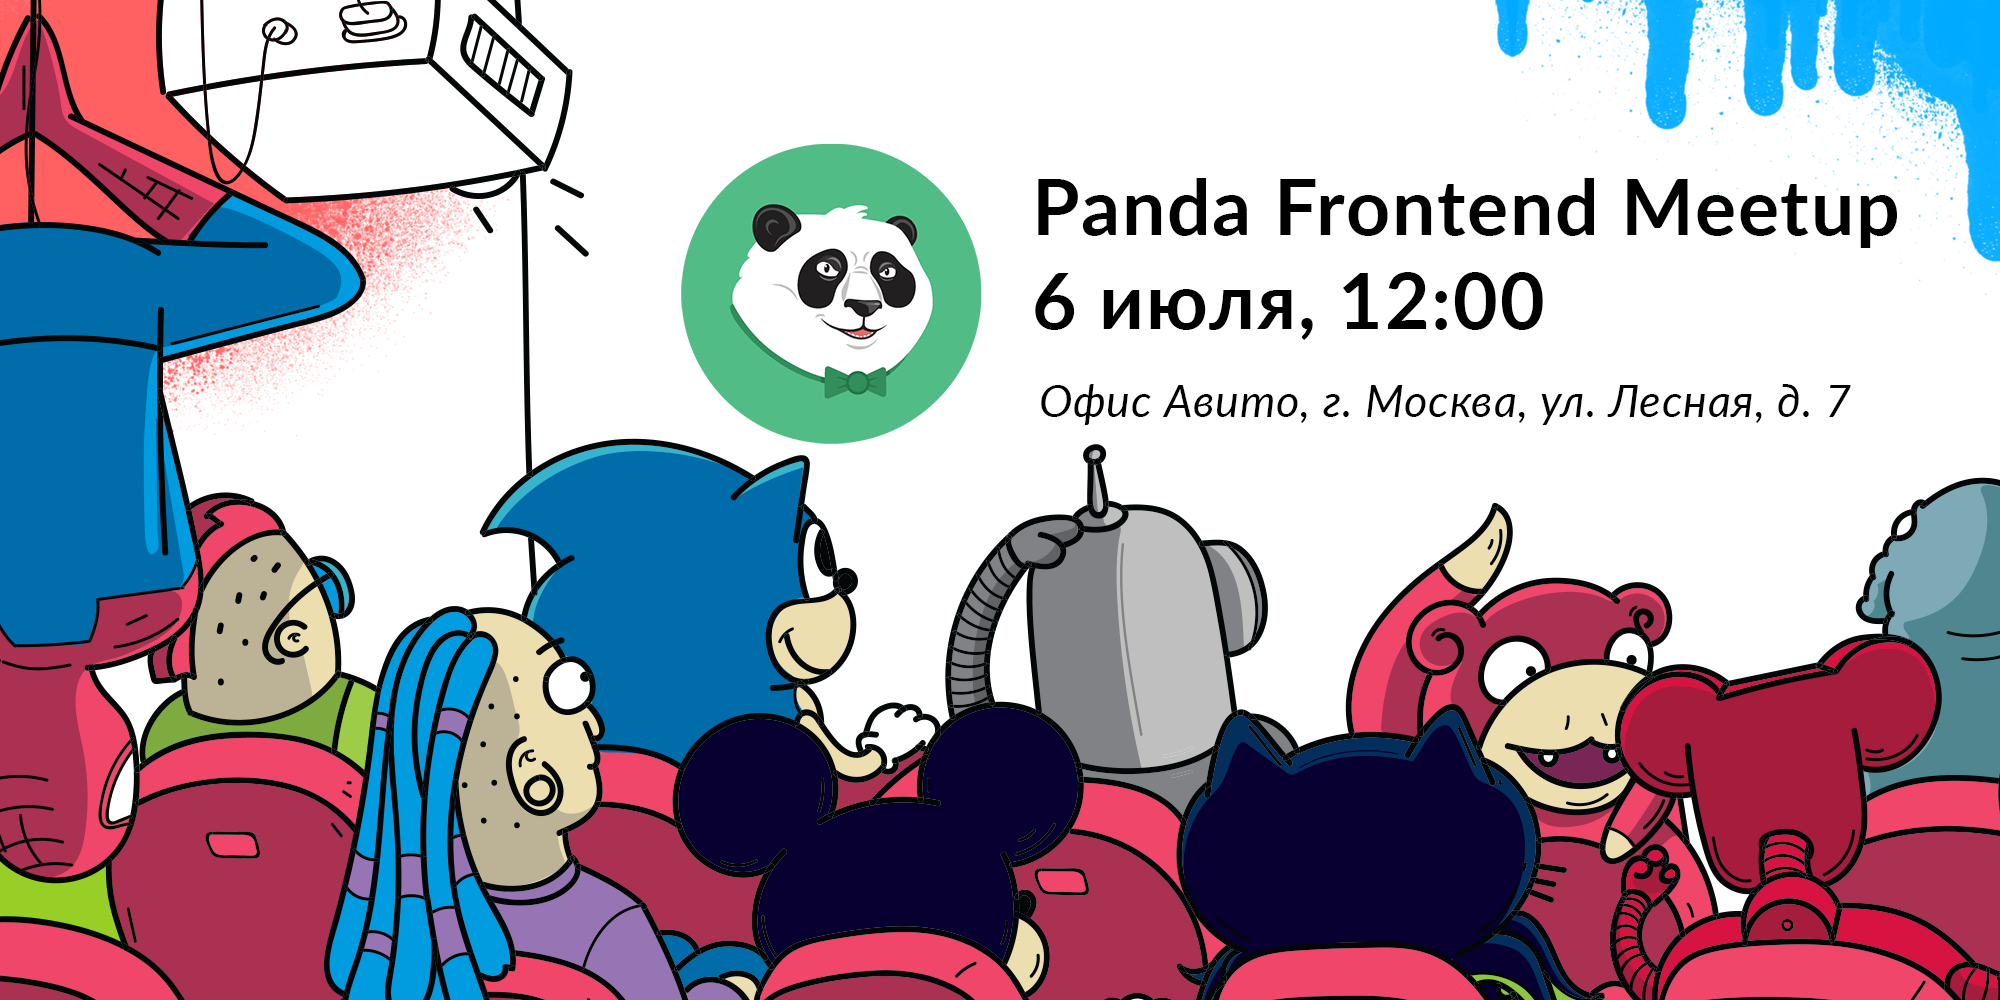 Плагины vue-cli, работа со «сложными» данными и тестирование на основе свойств — анонс Panda-Meetup Frontend - 1